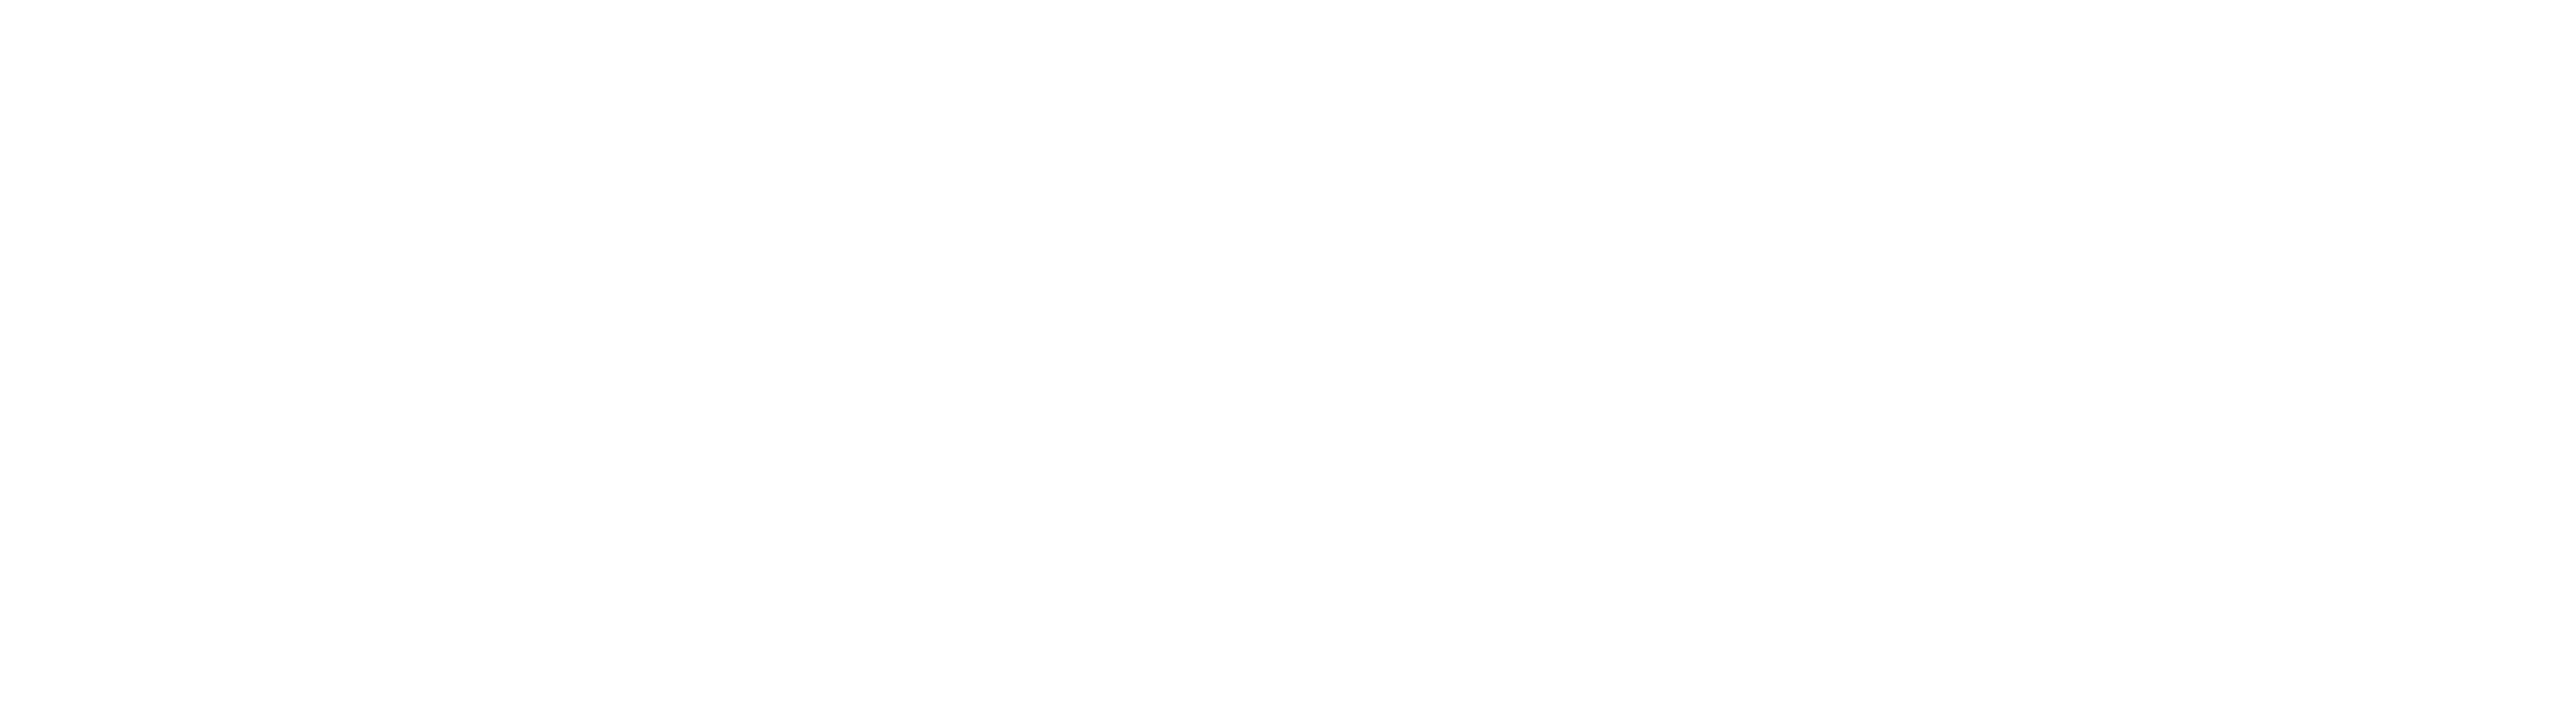 Shopify_logo_2018.svg